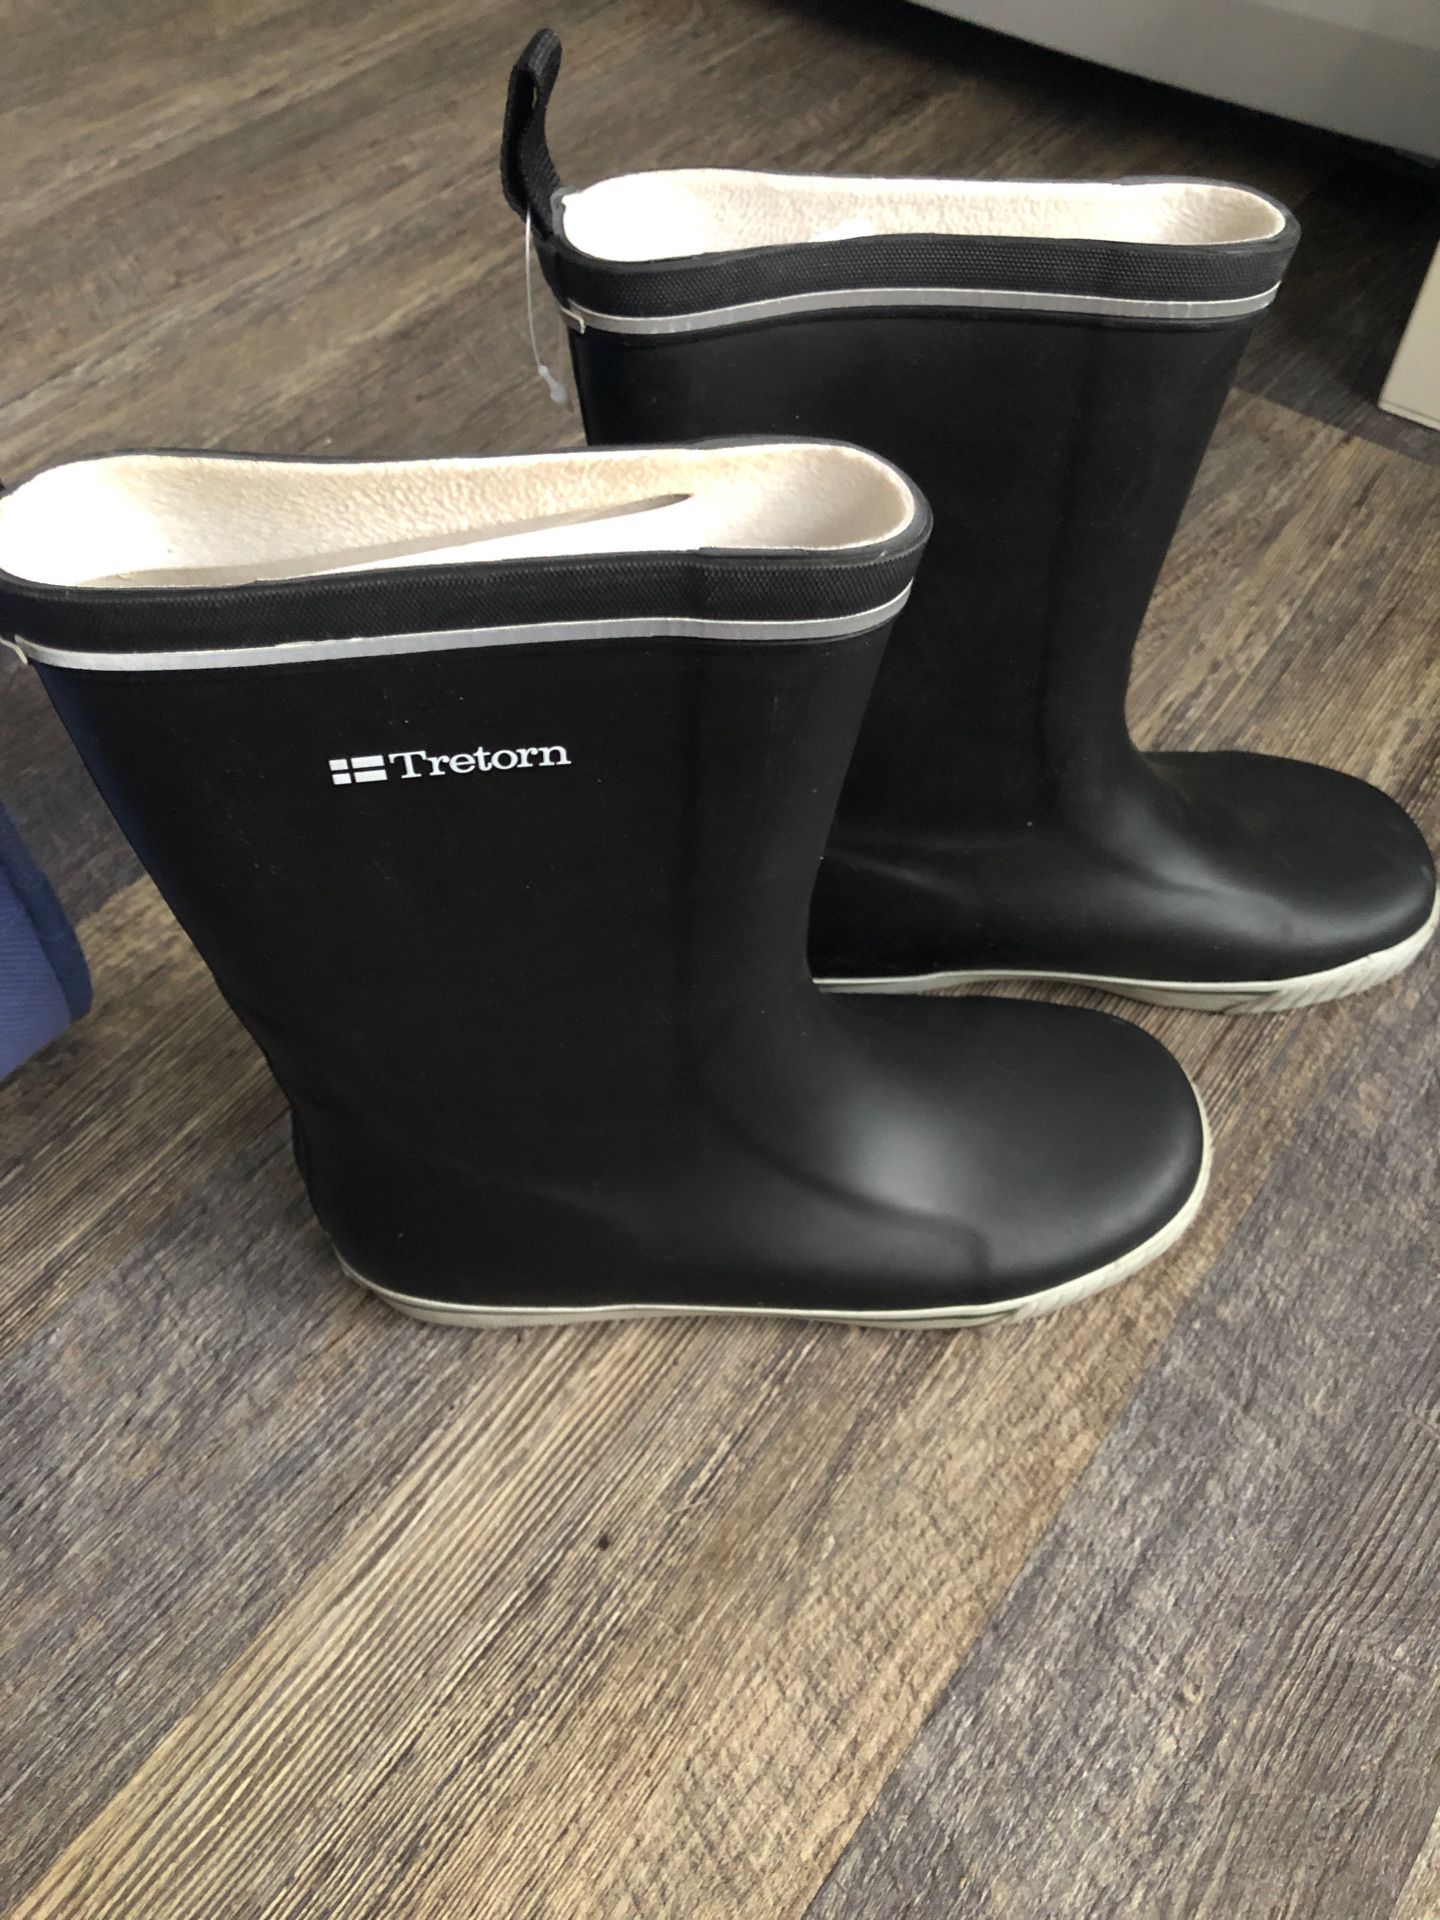 Trenton rain boots size 8